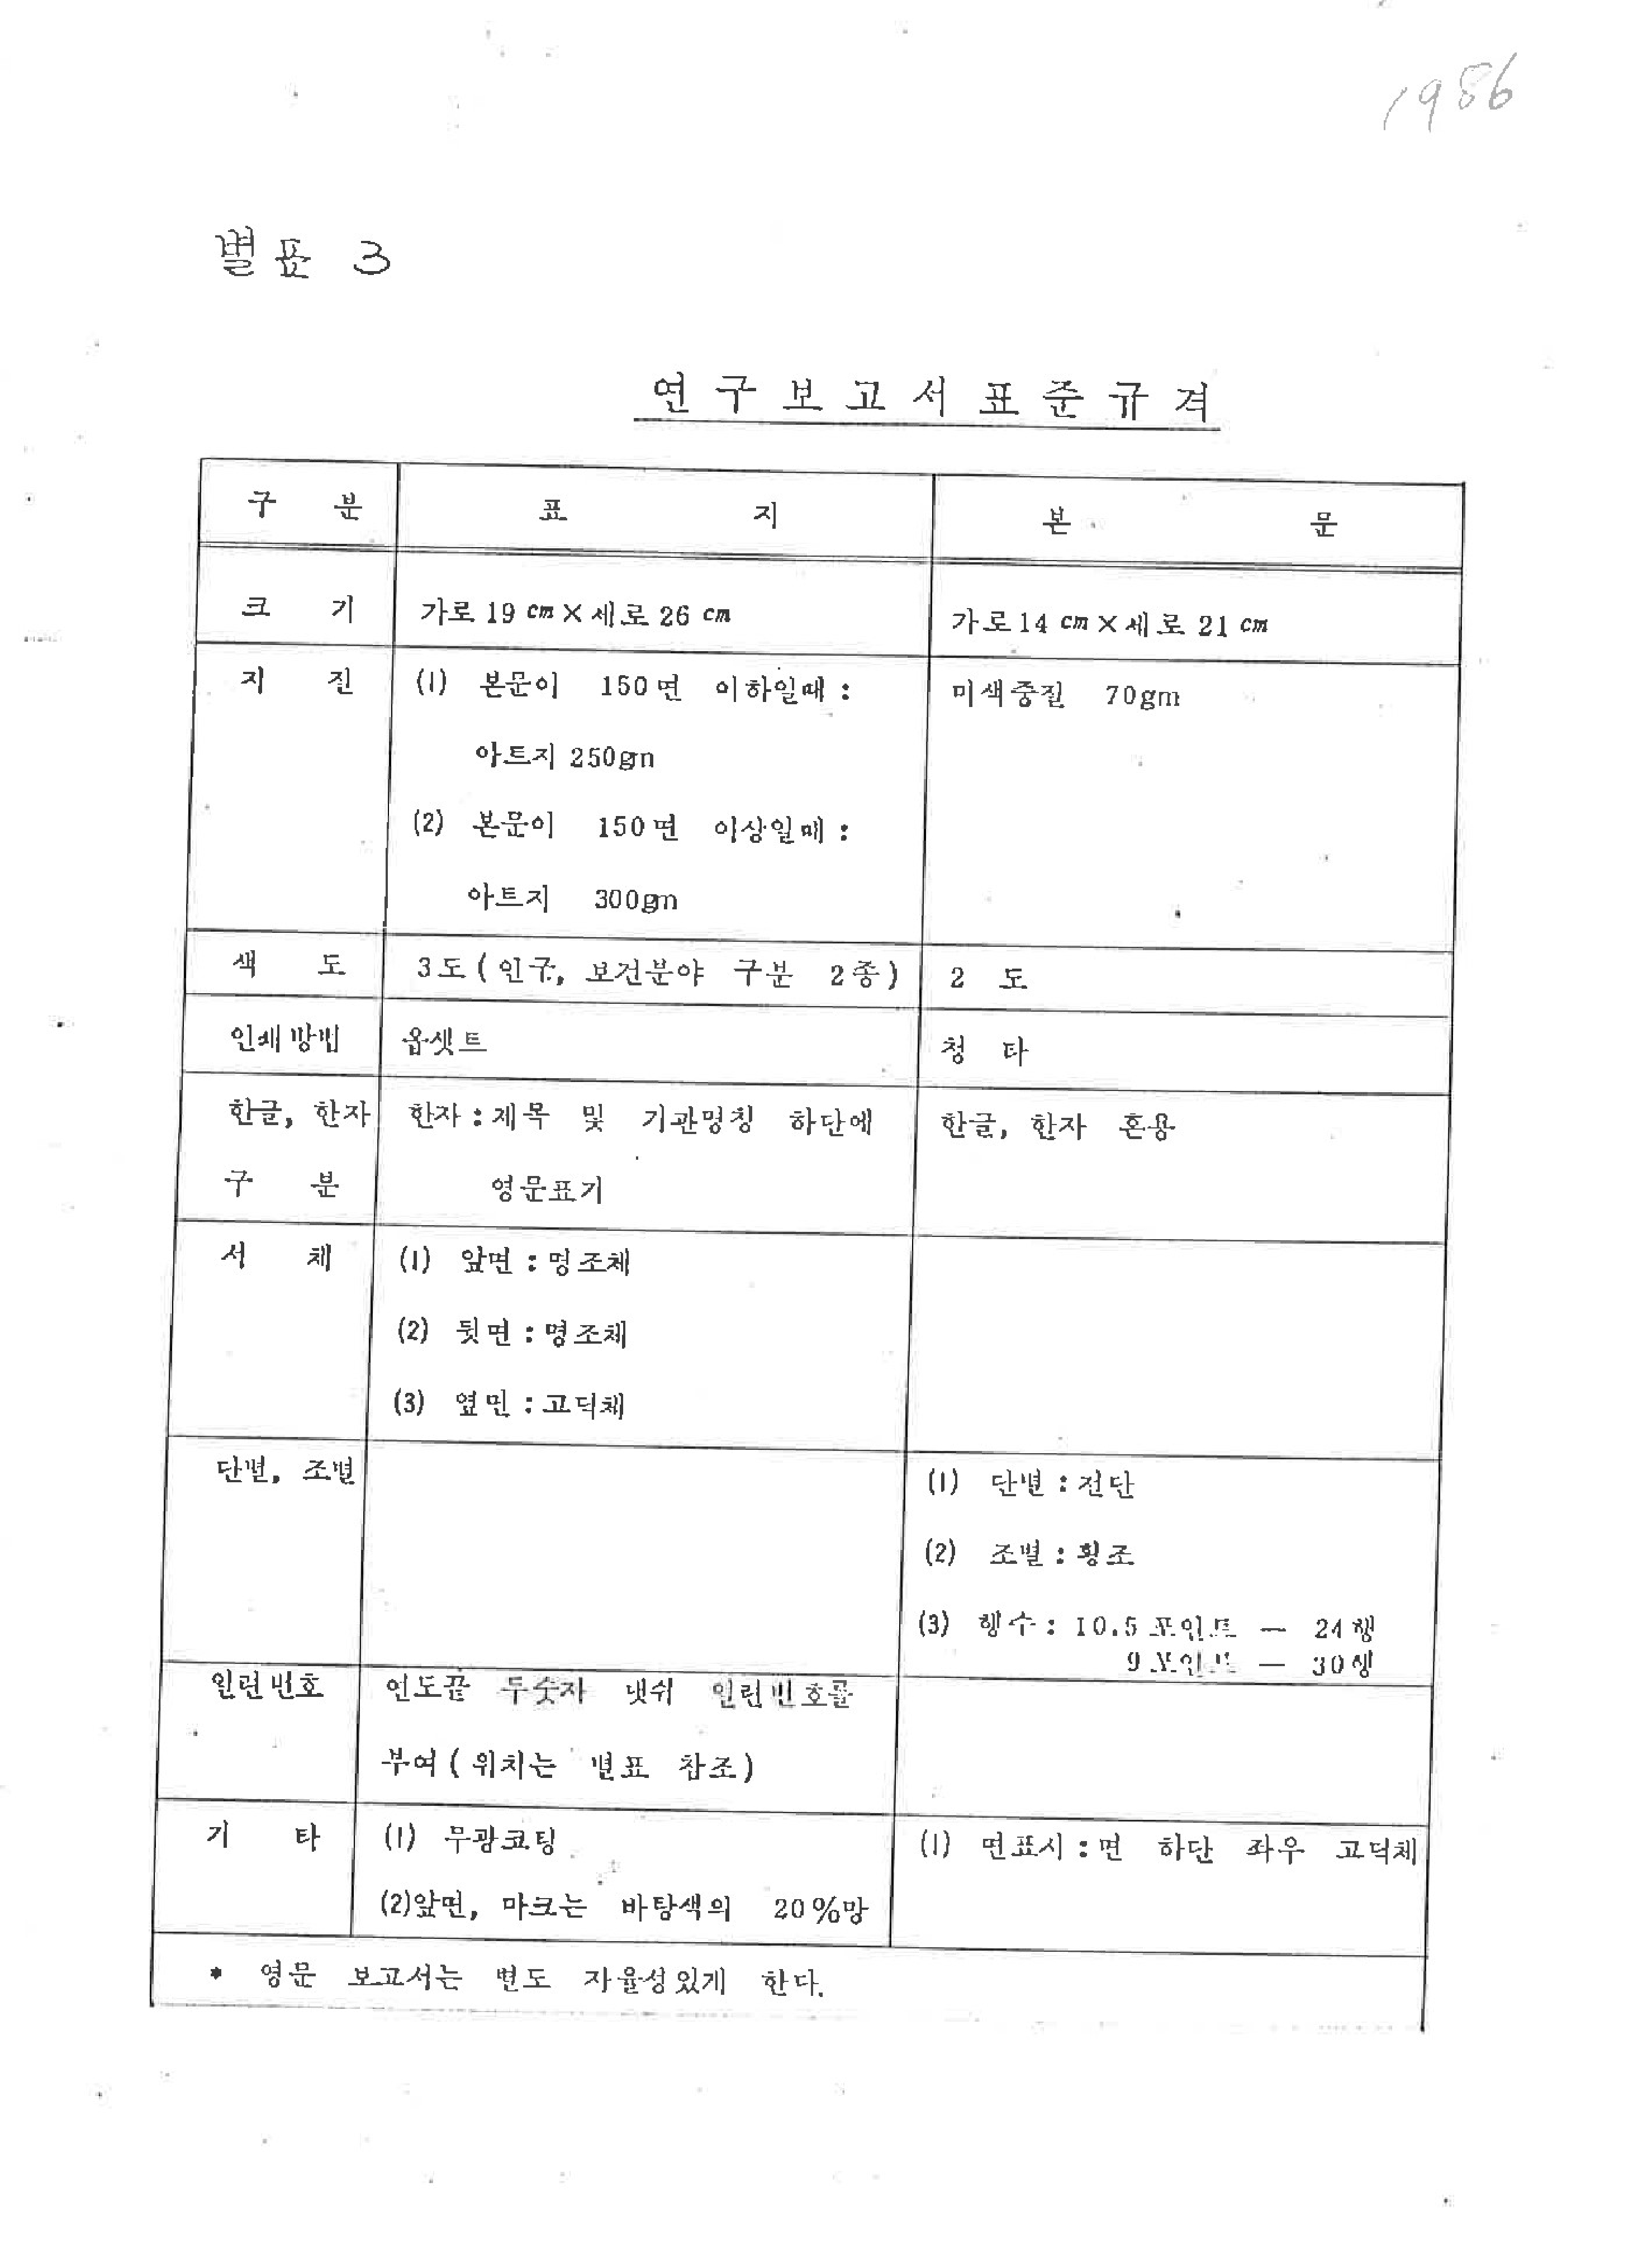 1980년대 한국인구보건연구원의 연구보고서 표준 규격과 형식